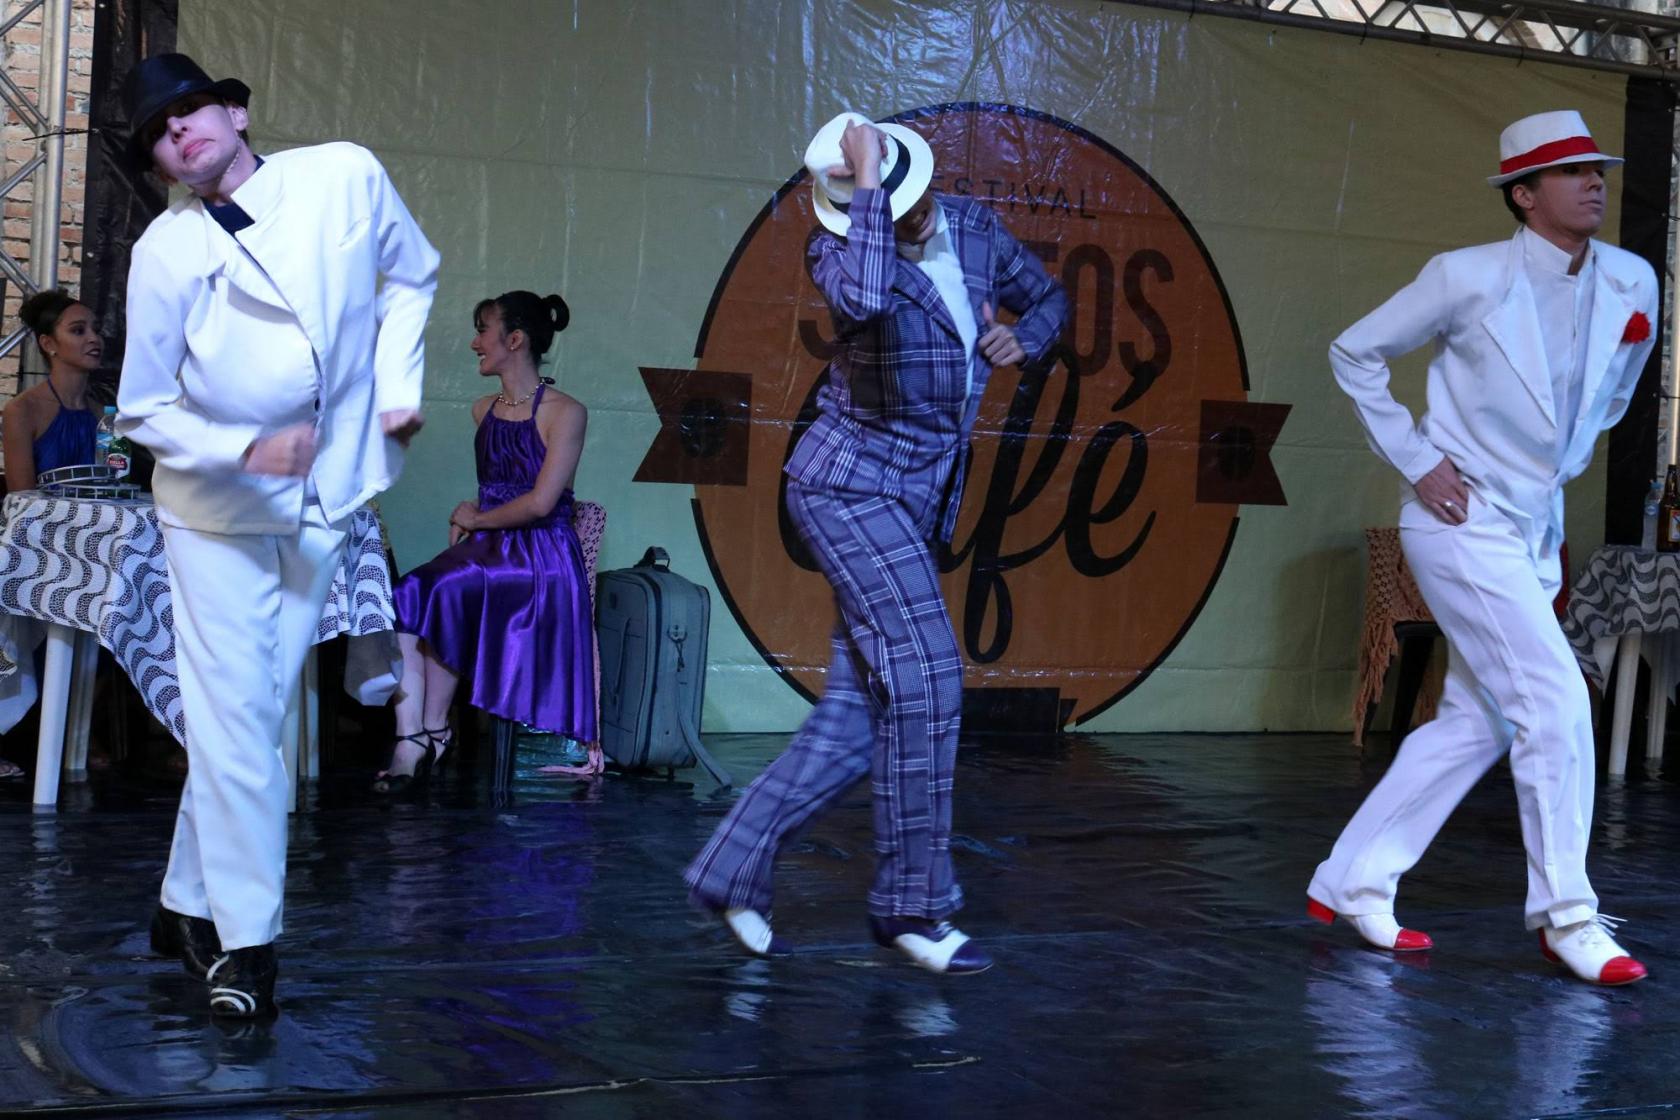 Balé da Cidade apresenta coreografia. Há três bailarinos no palco. Eles usam roupas masculinas e chapéus. #Pracegover